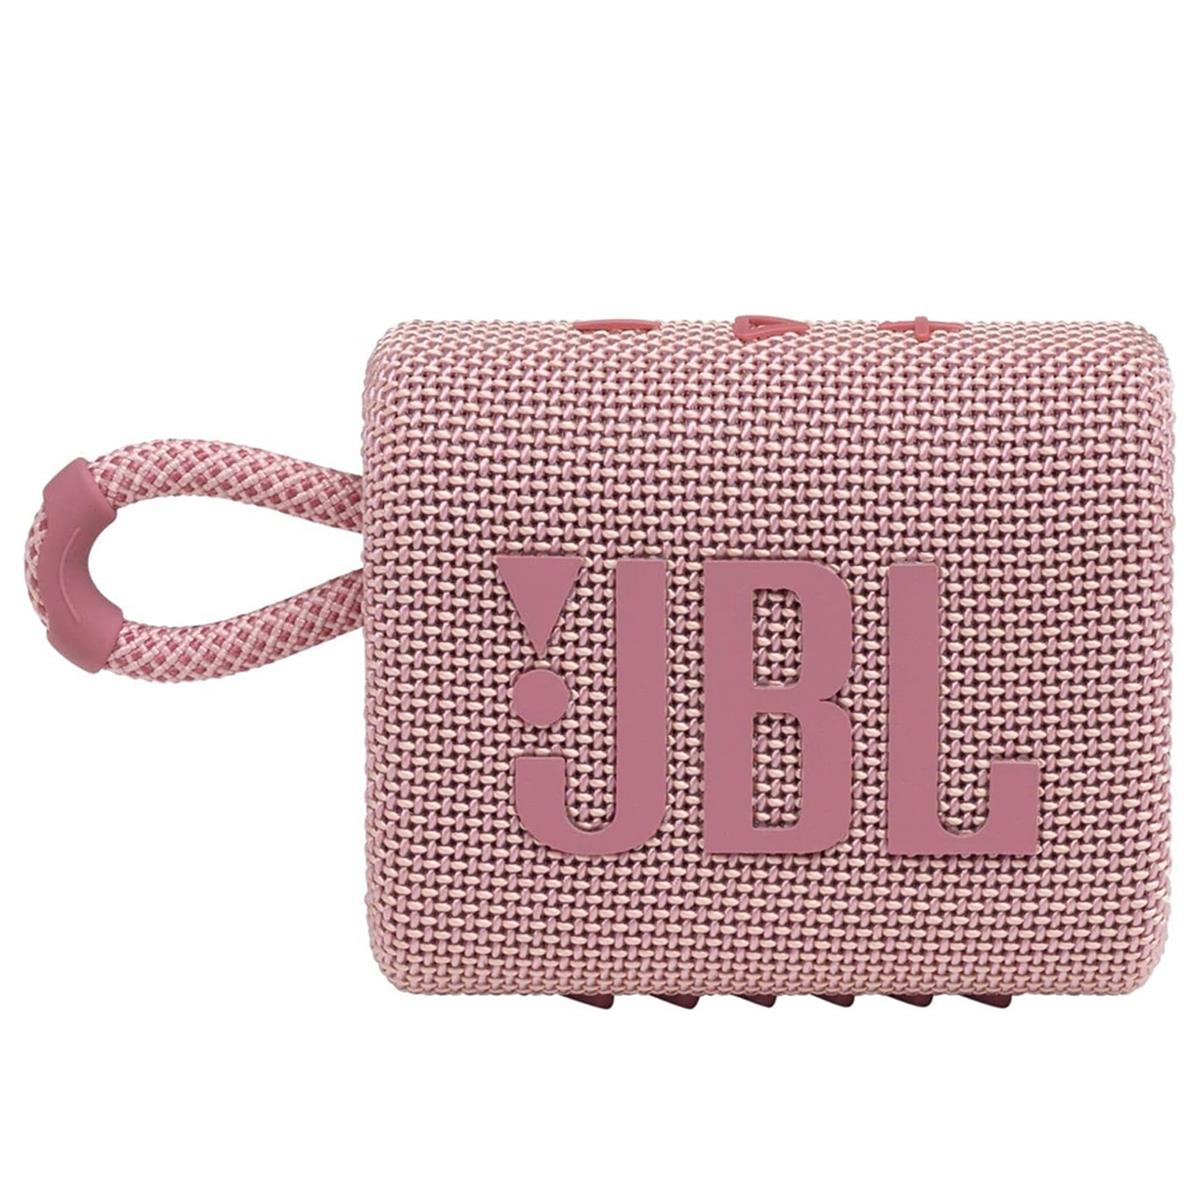 JBL Go 3 Waterproof Portable Bluetooth Speaker Pink -  JBLGO3PINKAM